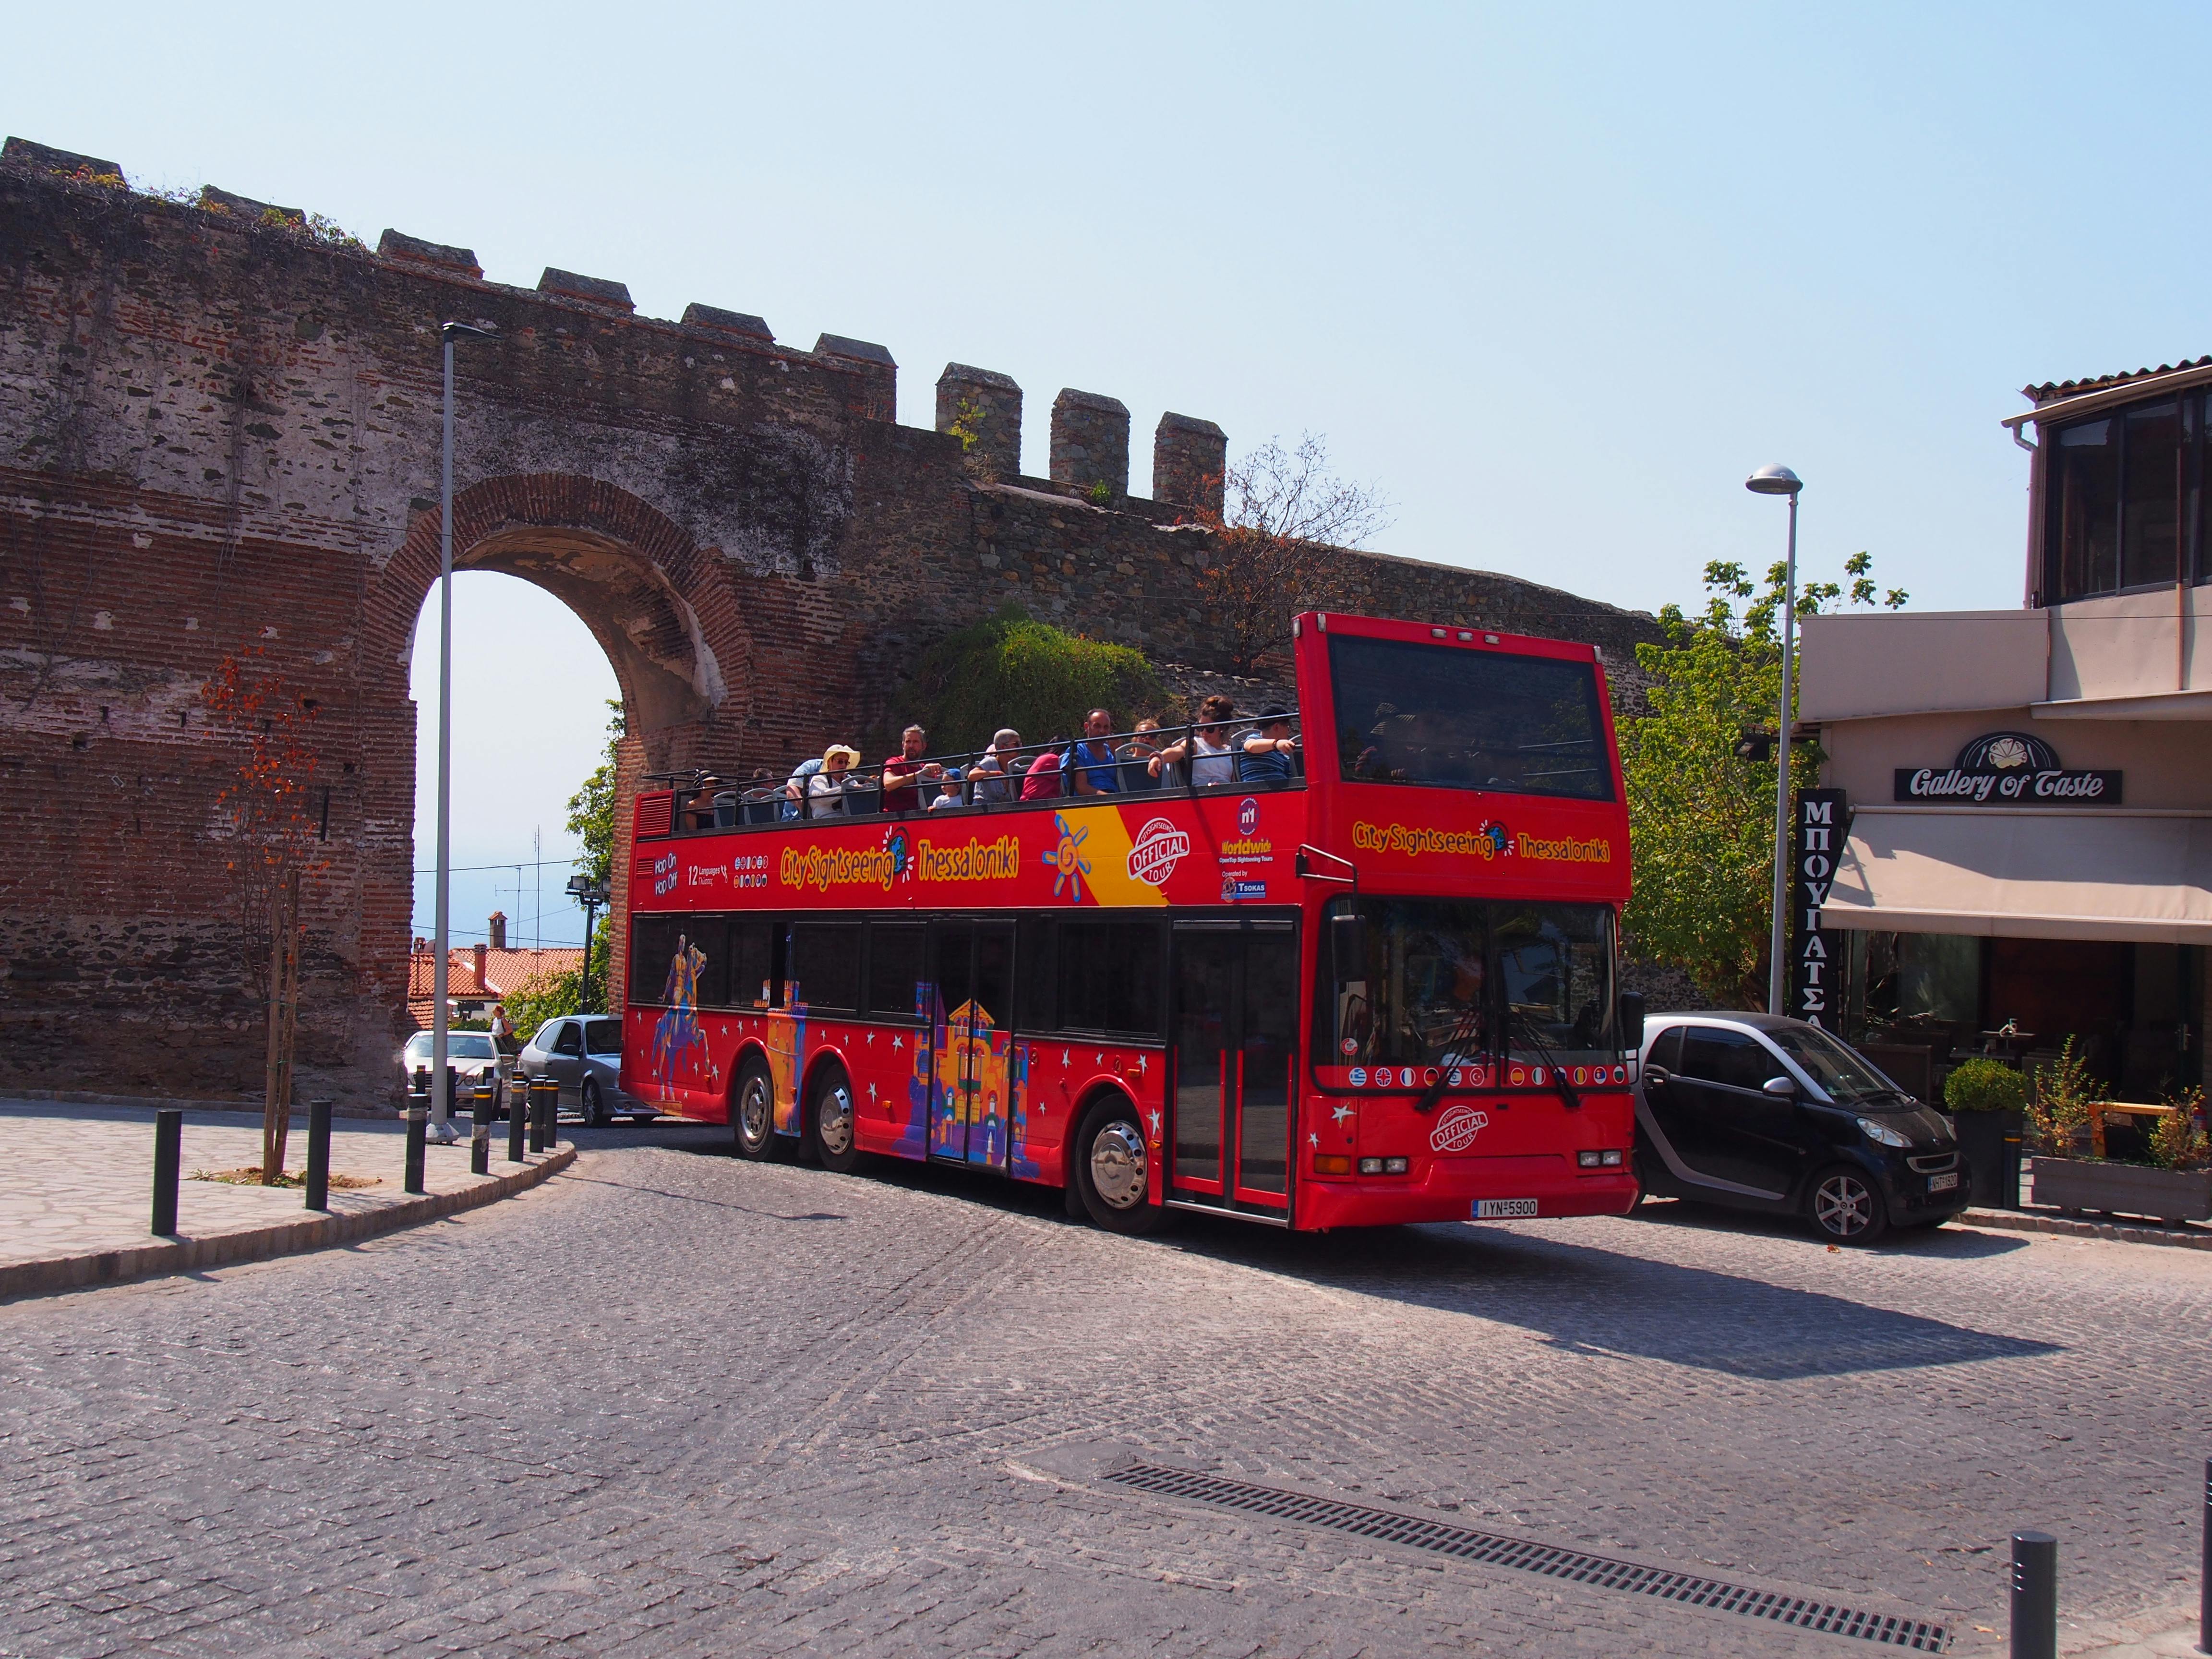 Stadtrundfahrt mit dem Hop-on-Hop-off-Bus durch Thessaloniki